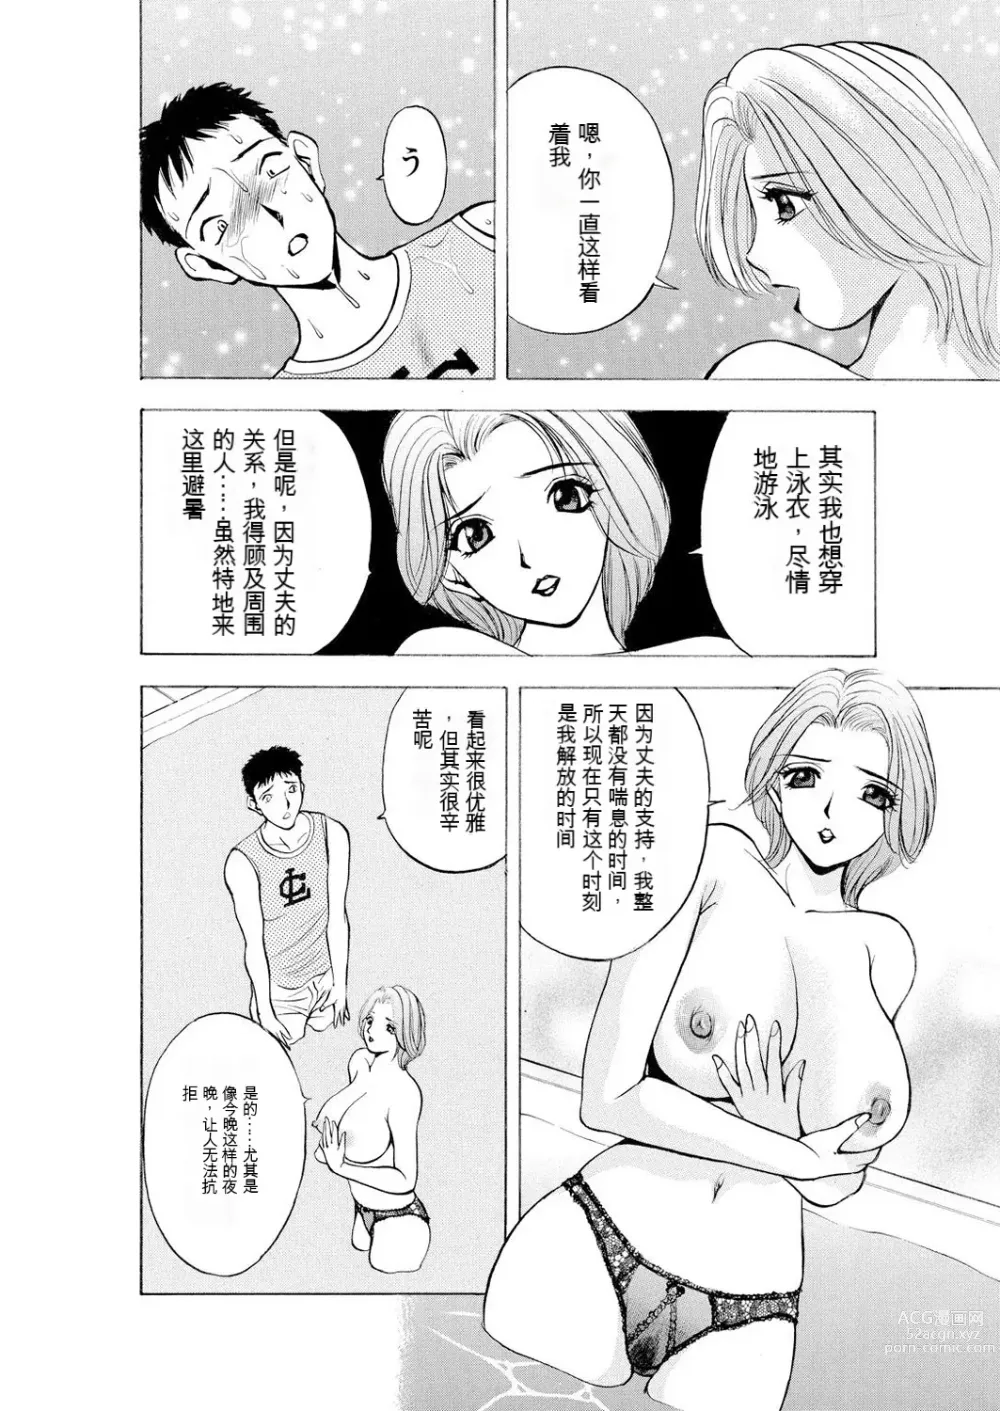 Page 10 of manga Netorare